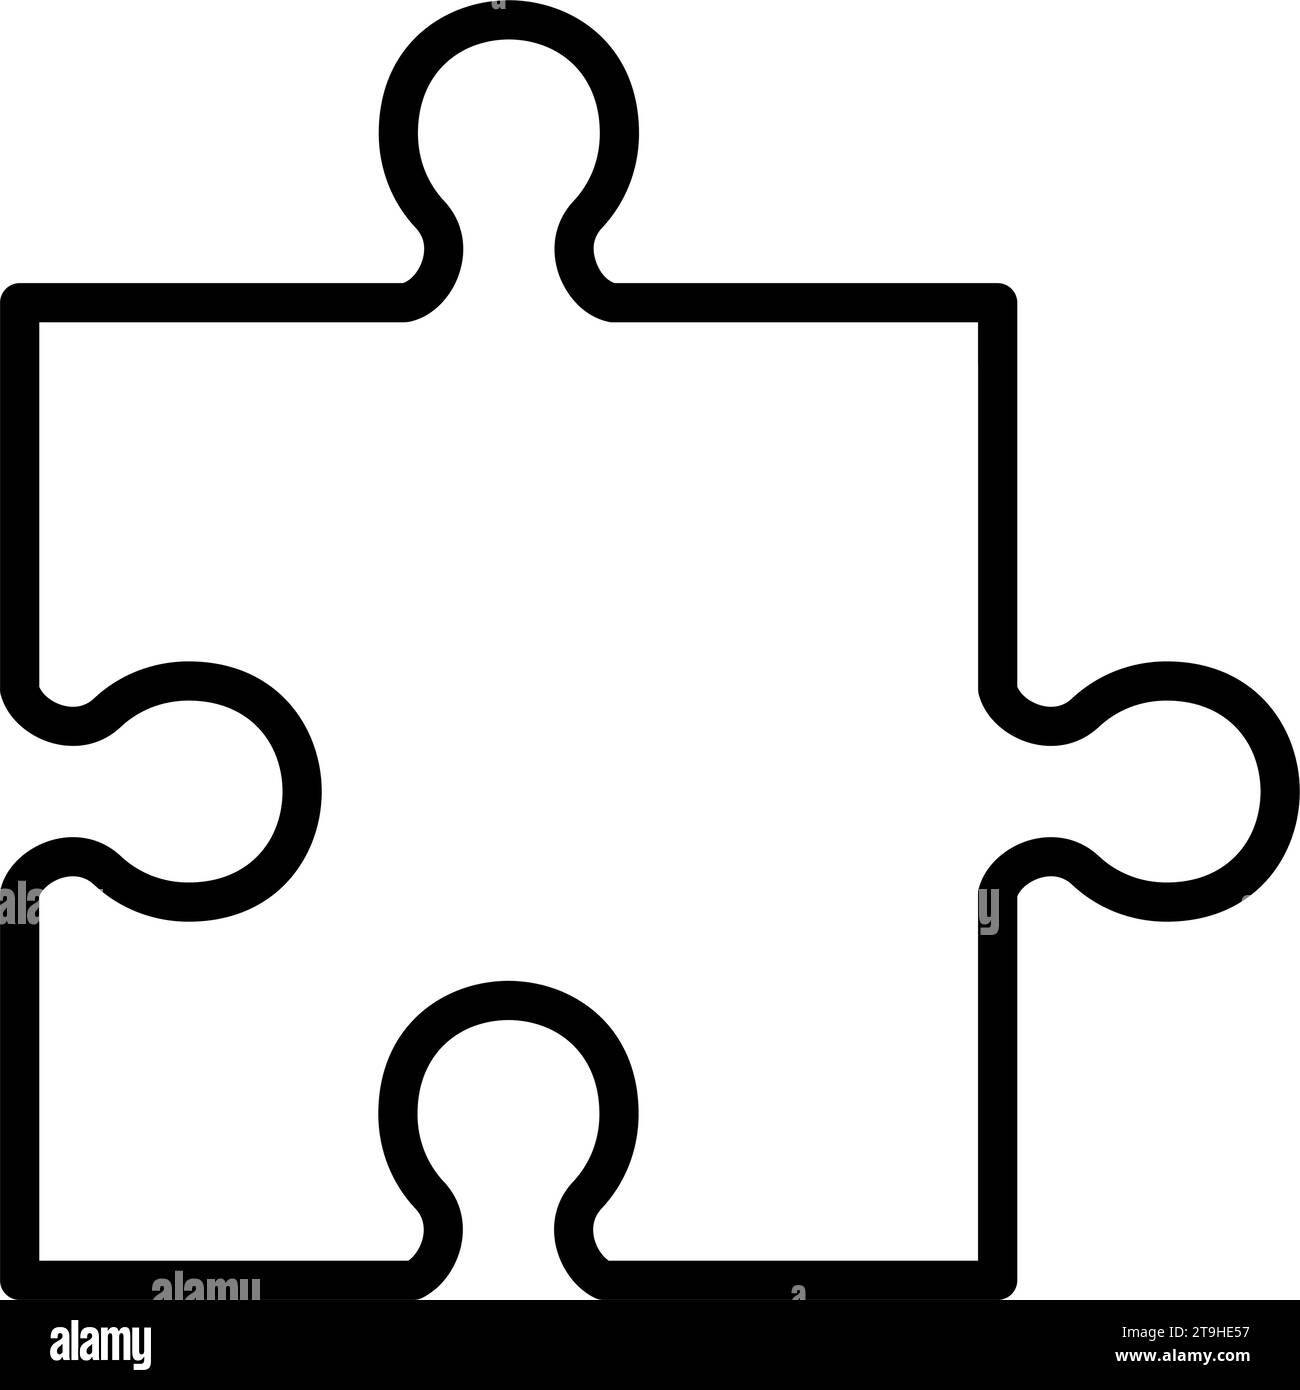 Forma semplice del puzzle, seghetto alternativo in bianco e nero. Isolato. Illustrazione vettoriale. Illustrazione Vettoriale